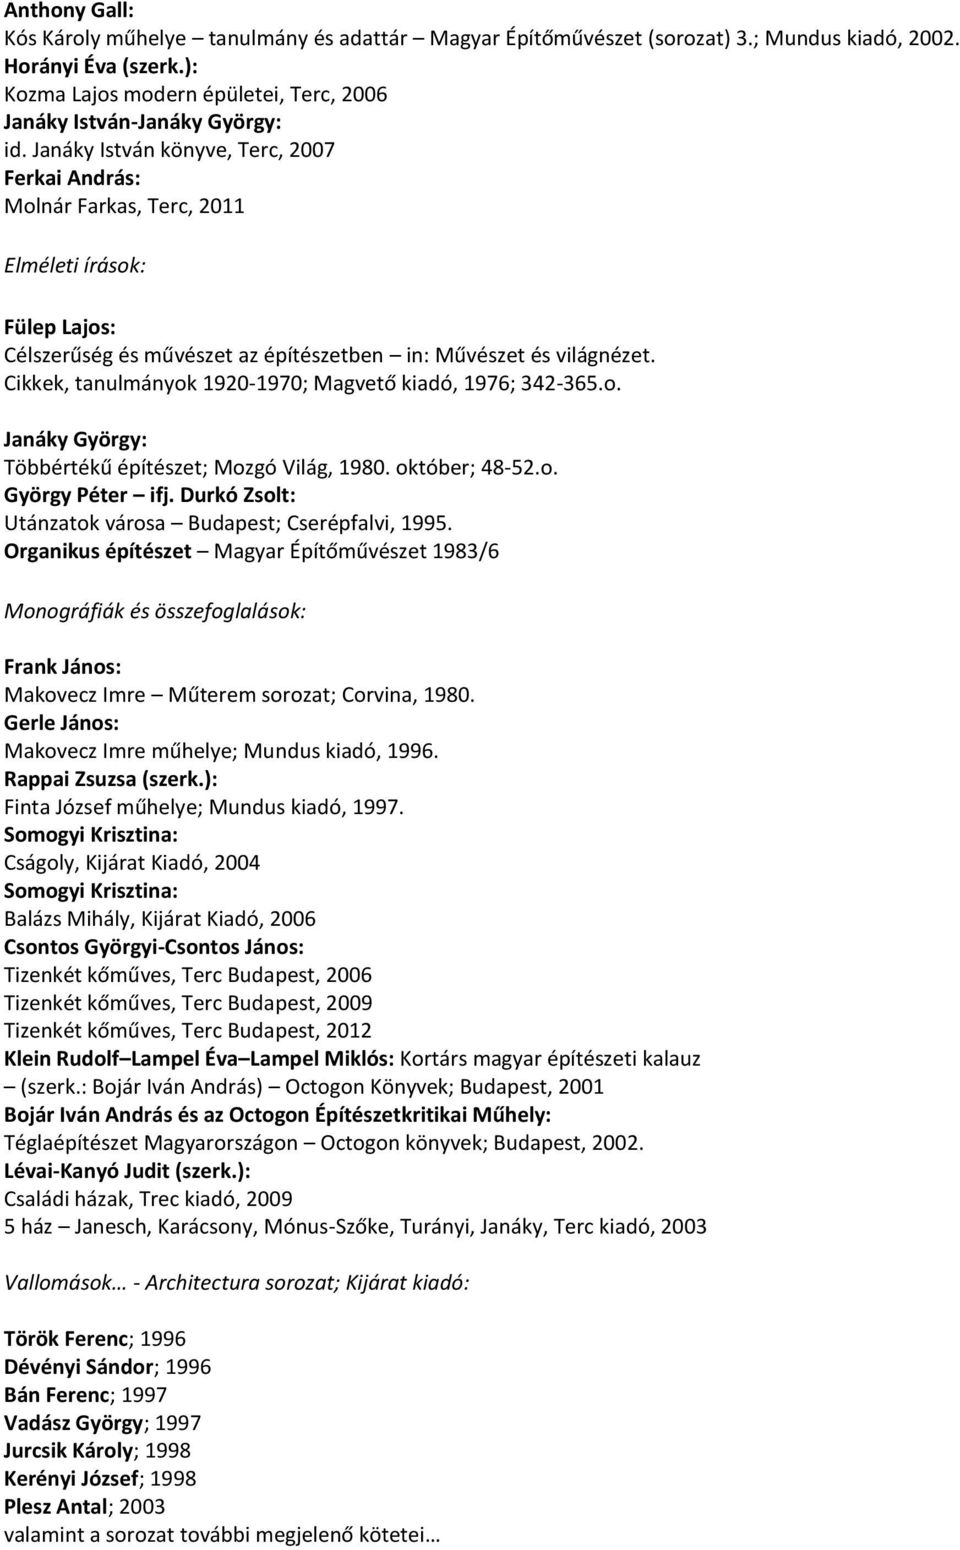 Janáky István könyve, Terc, 2007 Molnár Farkas, Terc, 2011 Elméleti írások: Fülep Lajos: Célszerűség és művészet az építészetben in: Művészet és világnézet.